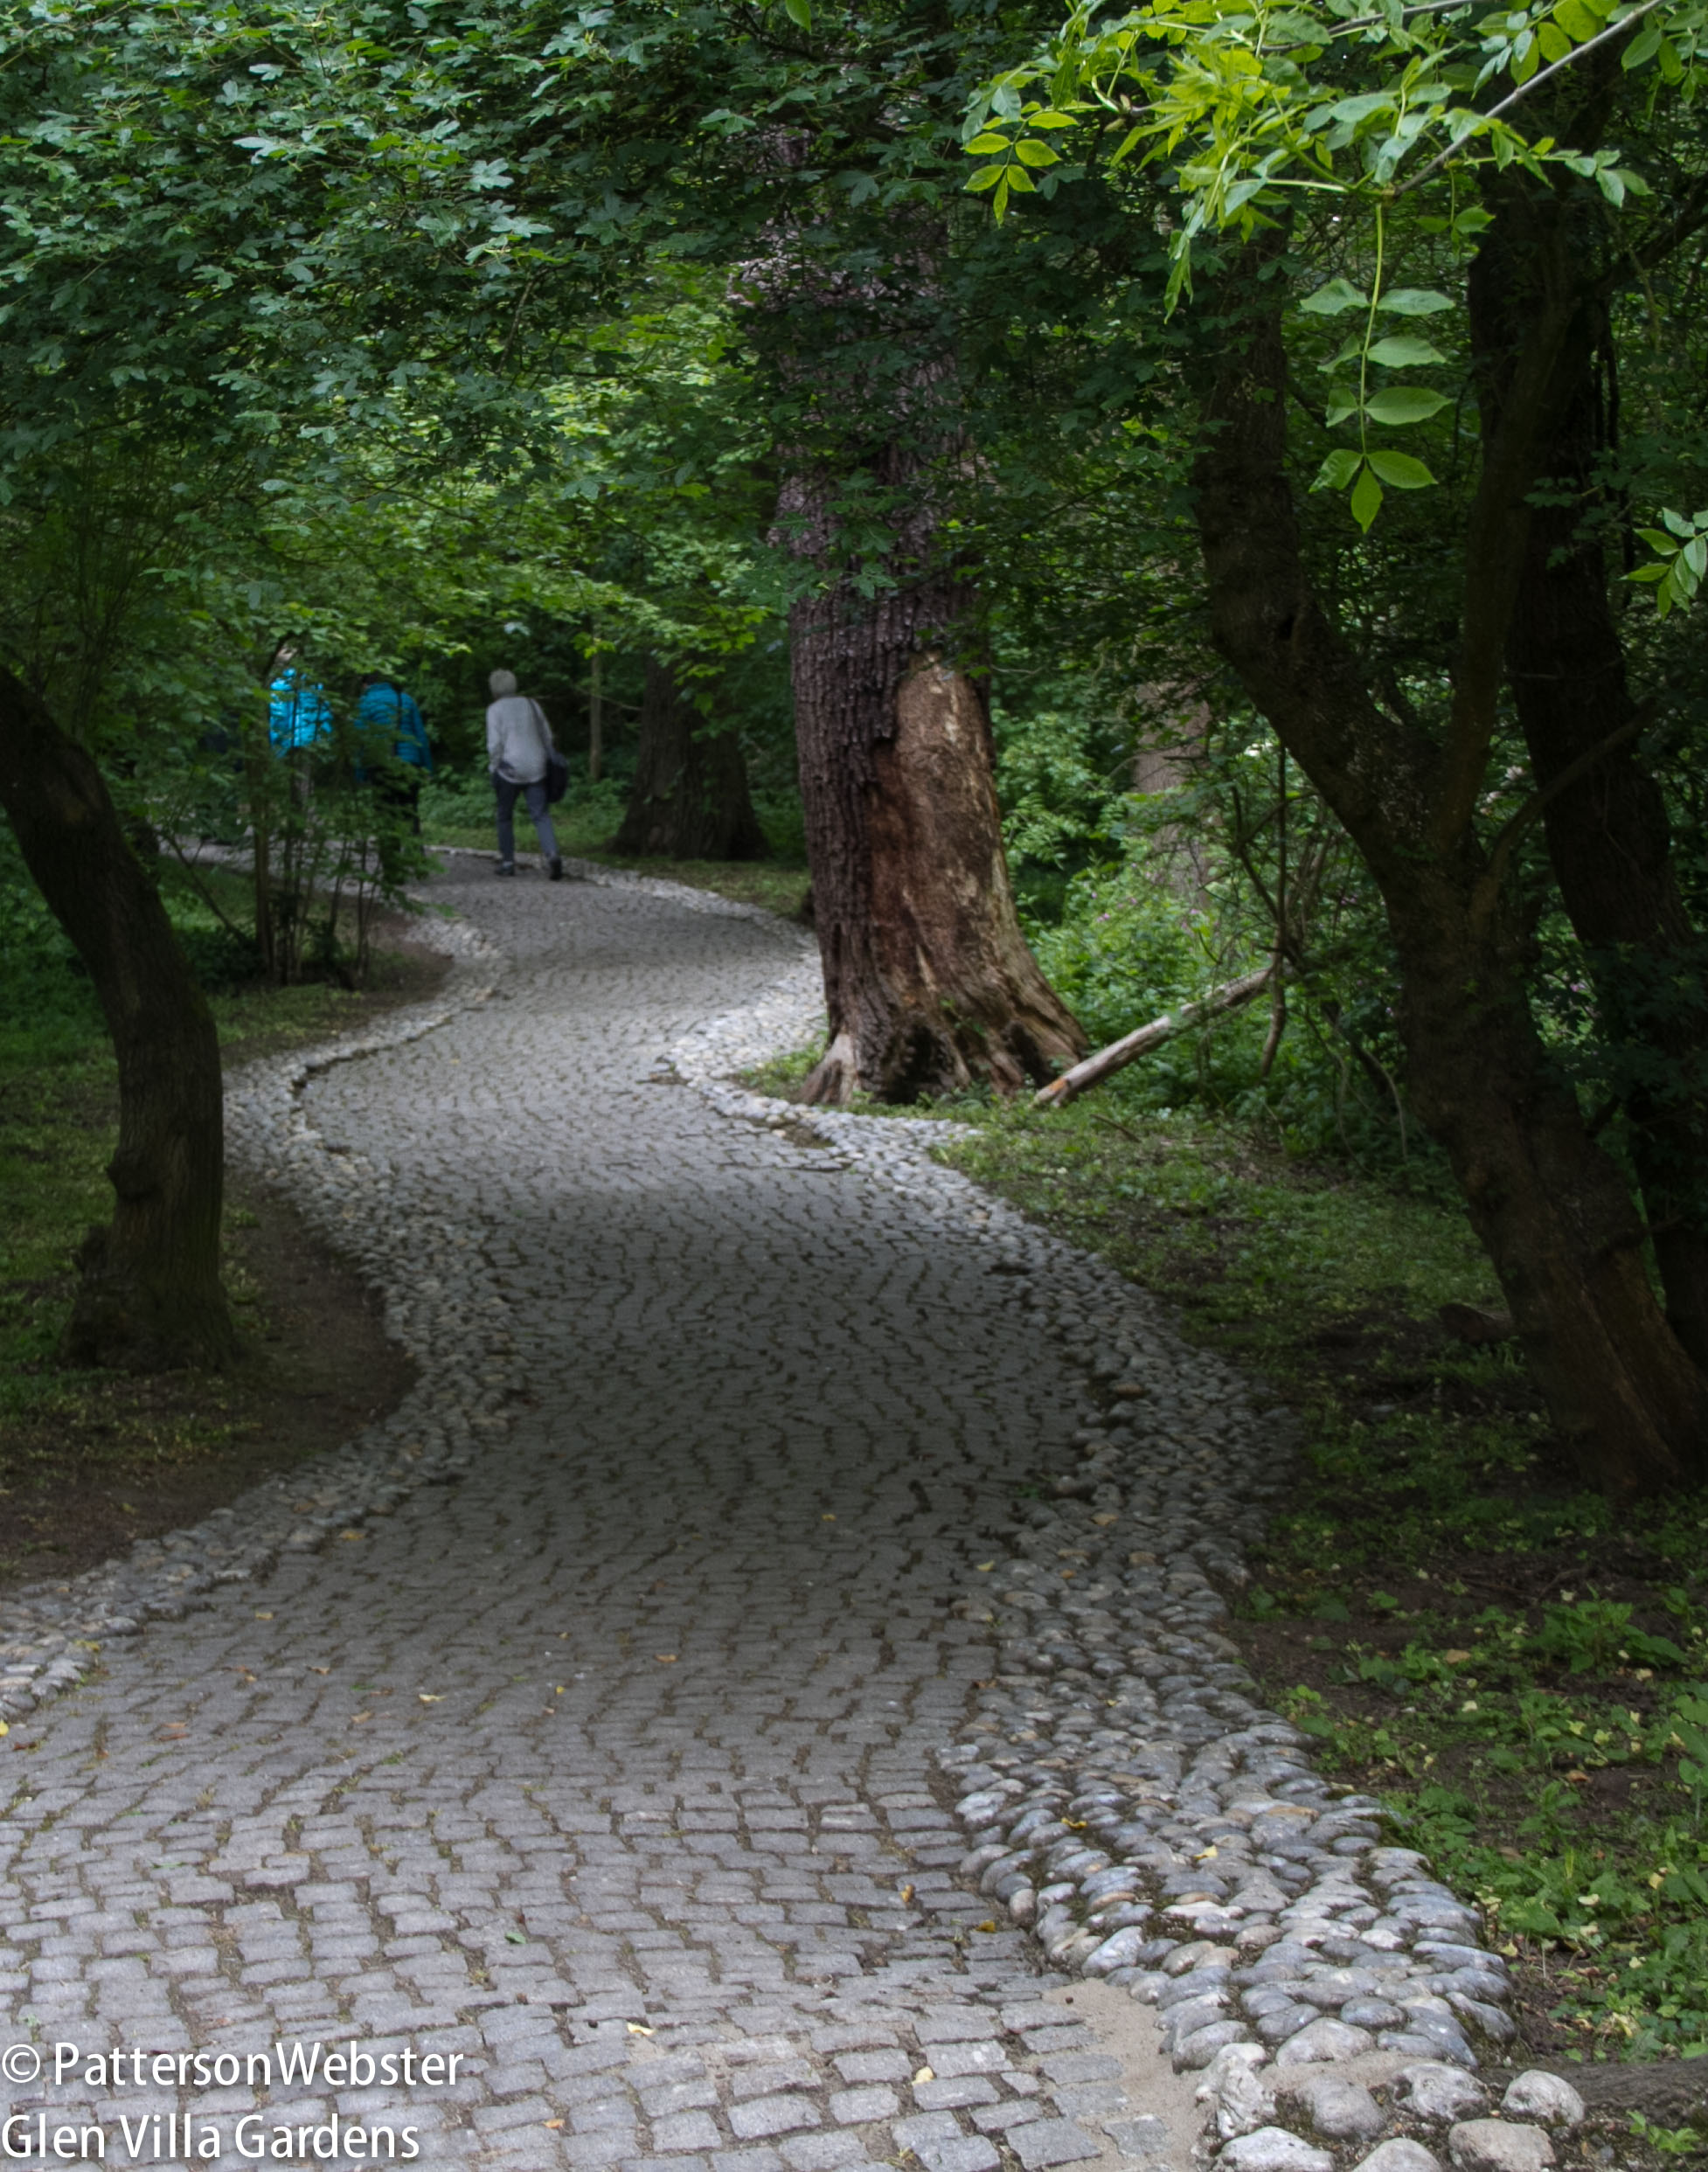 A river of cobblestones surrounds an uneven, curving path.